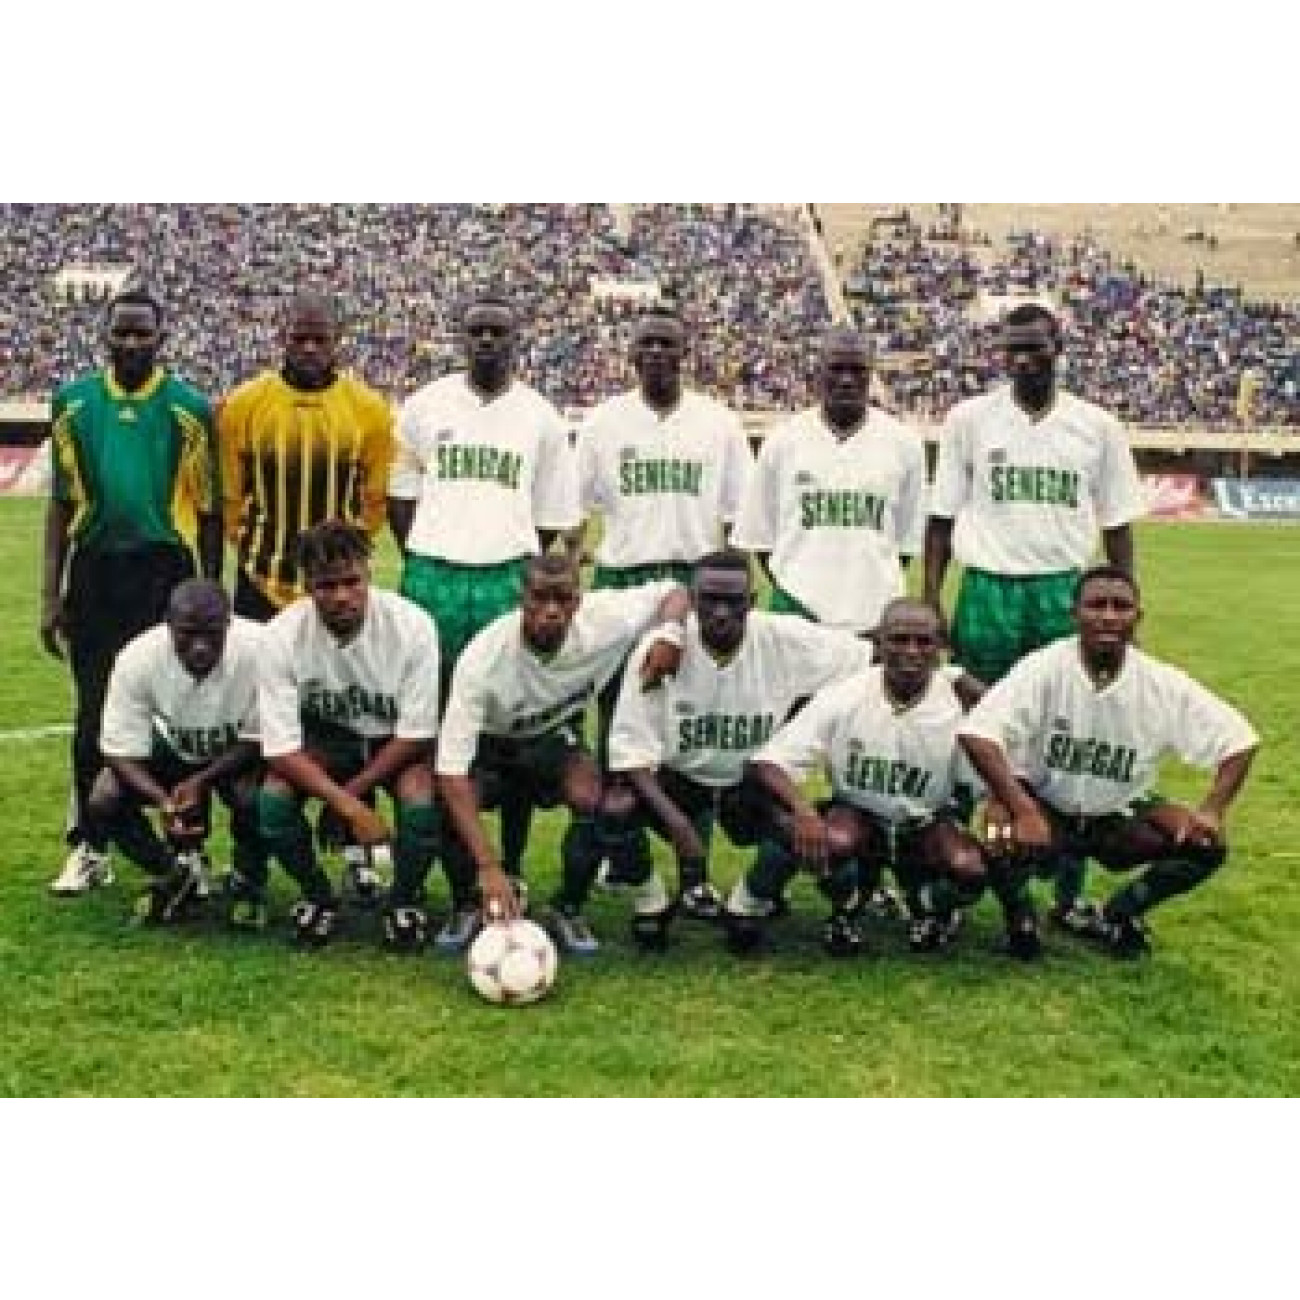 Maillot Sénégal 2002 foot retro